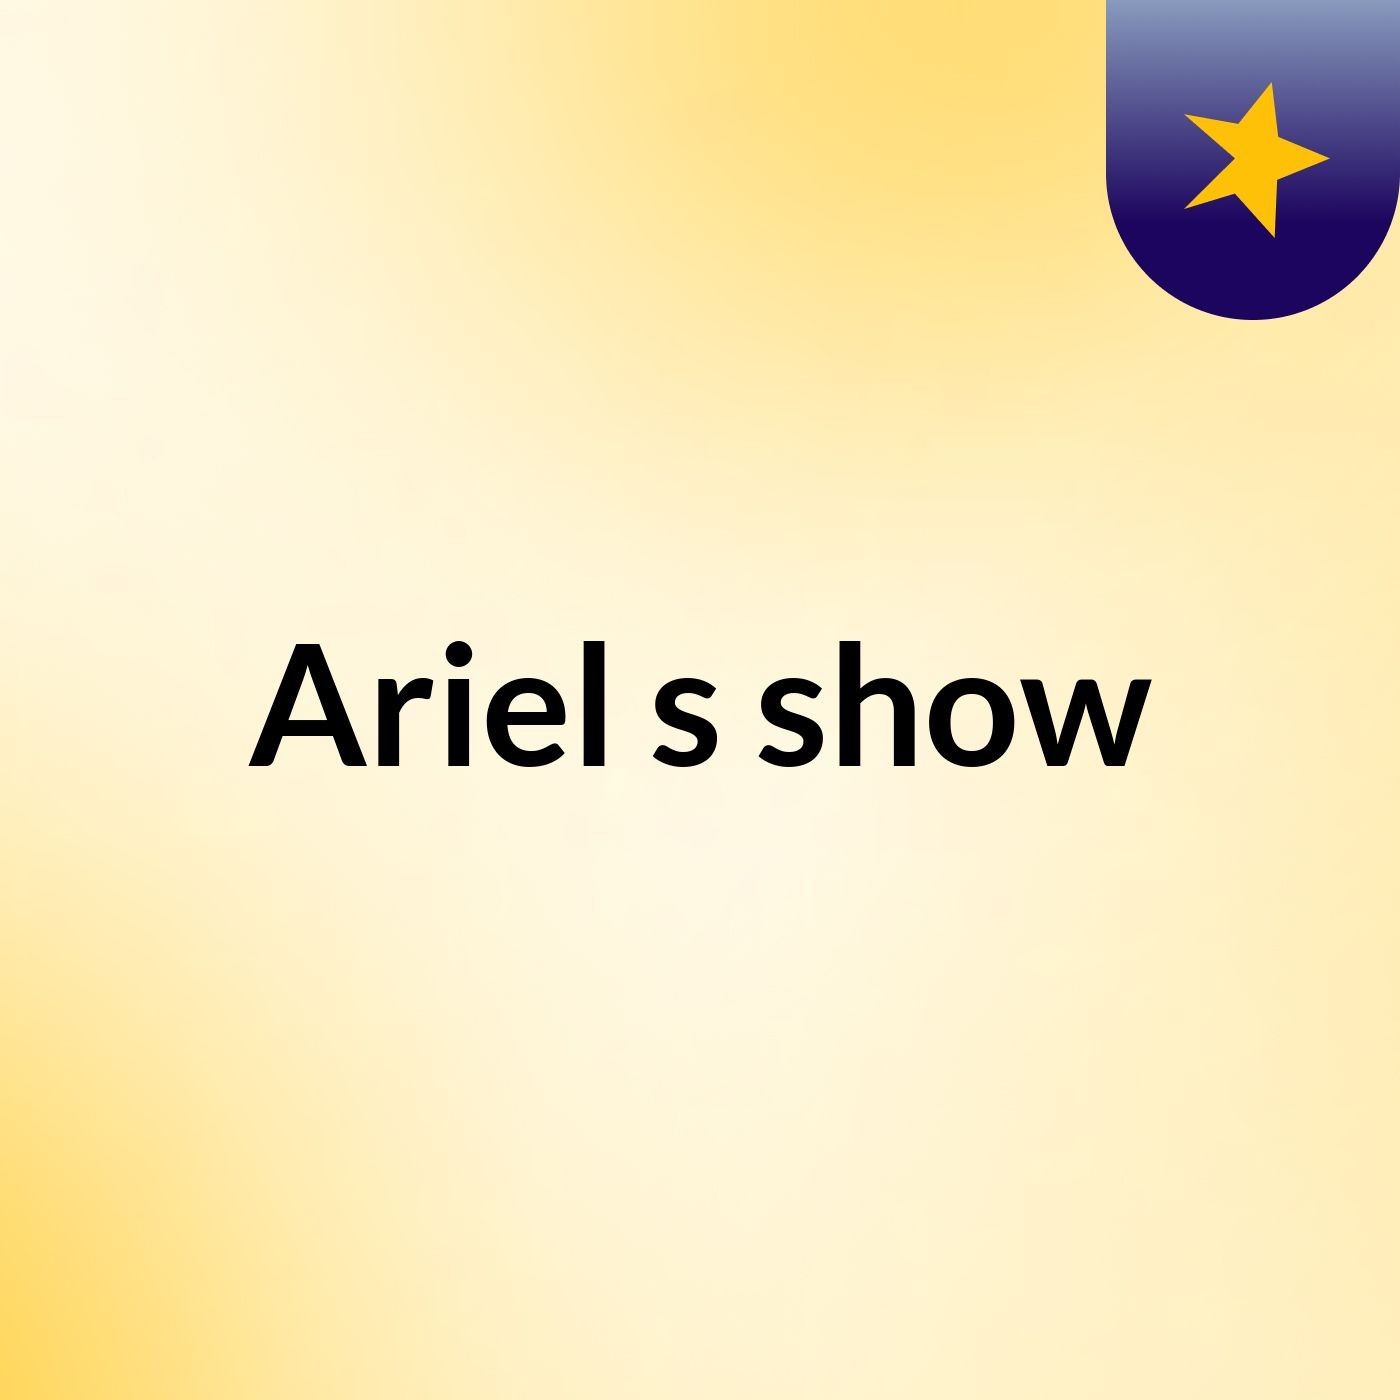 Ariel's show